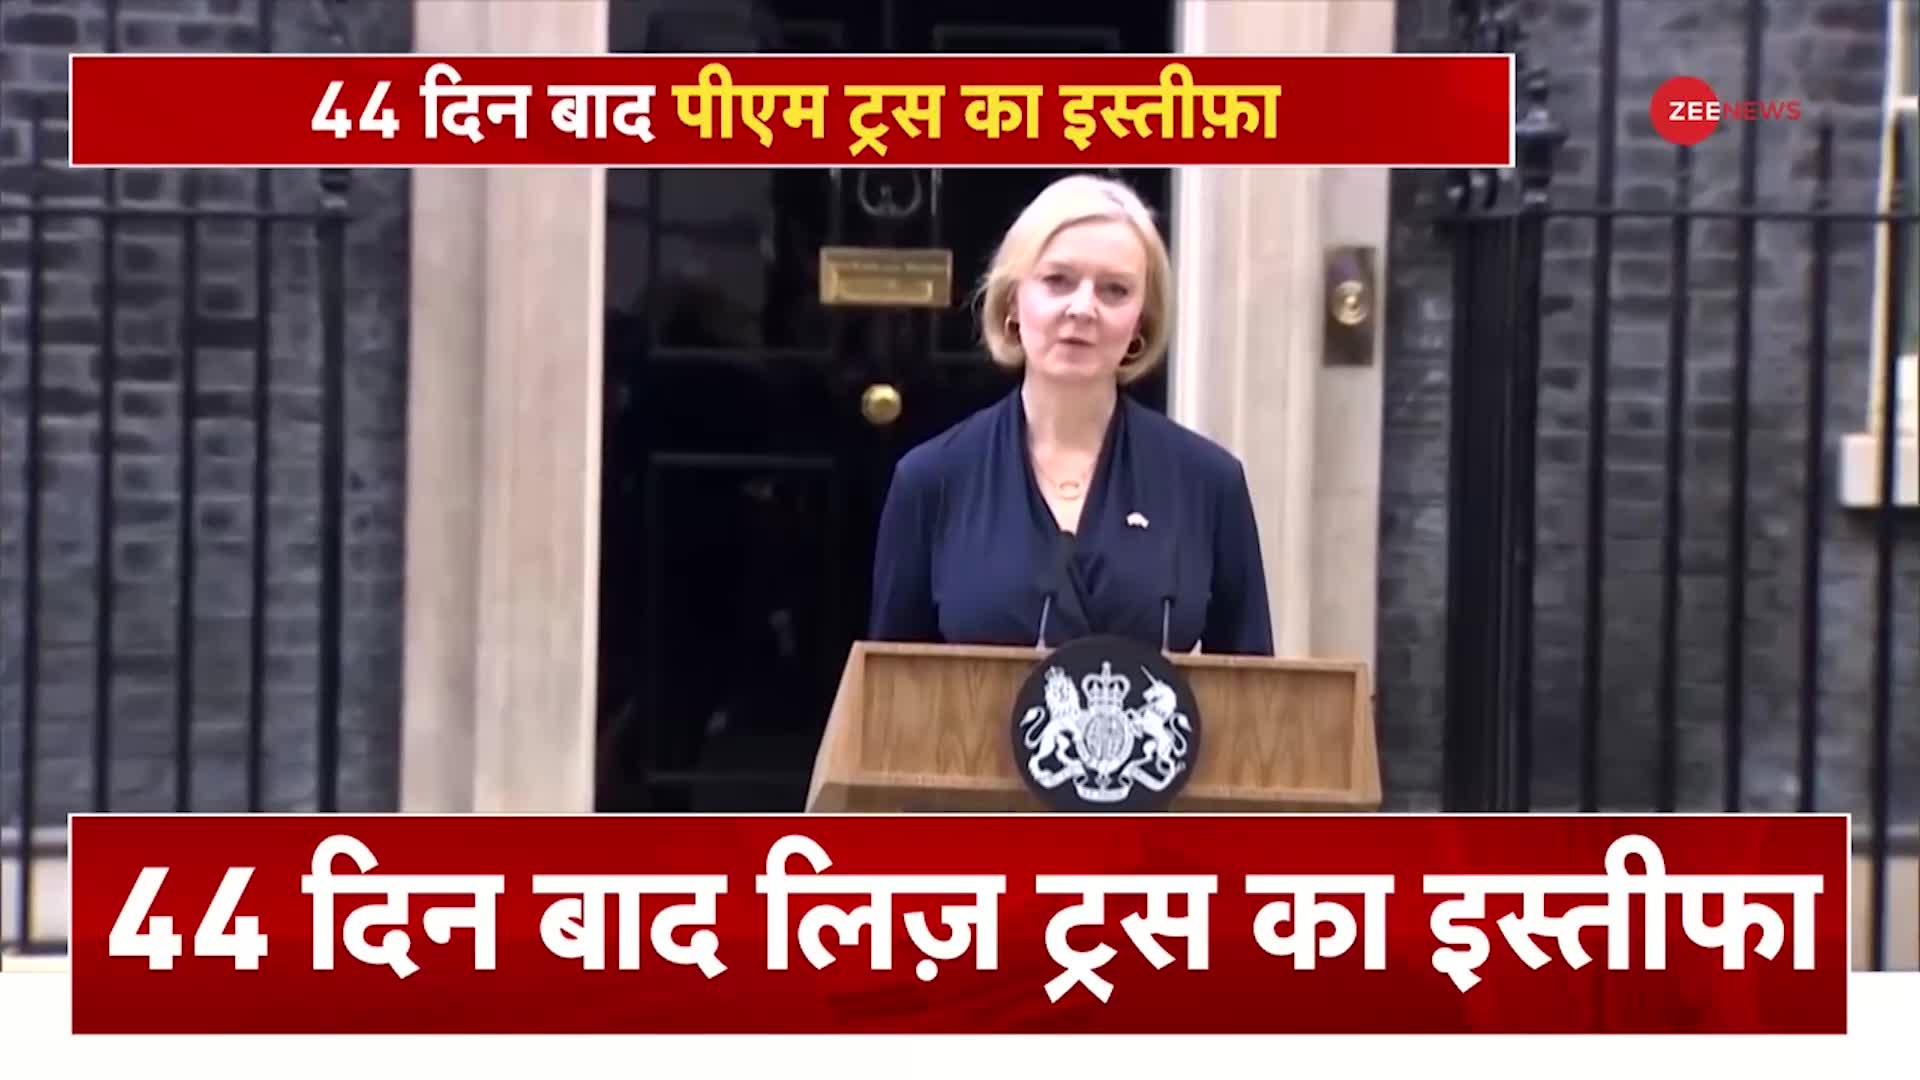 Breaking News: ब्रिटेन की PM लिज ट्रस ने इस्तीफा दिया